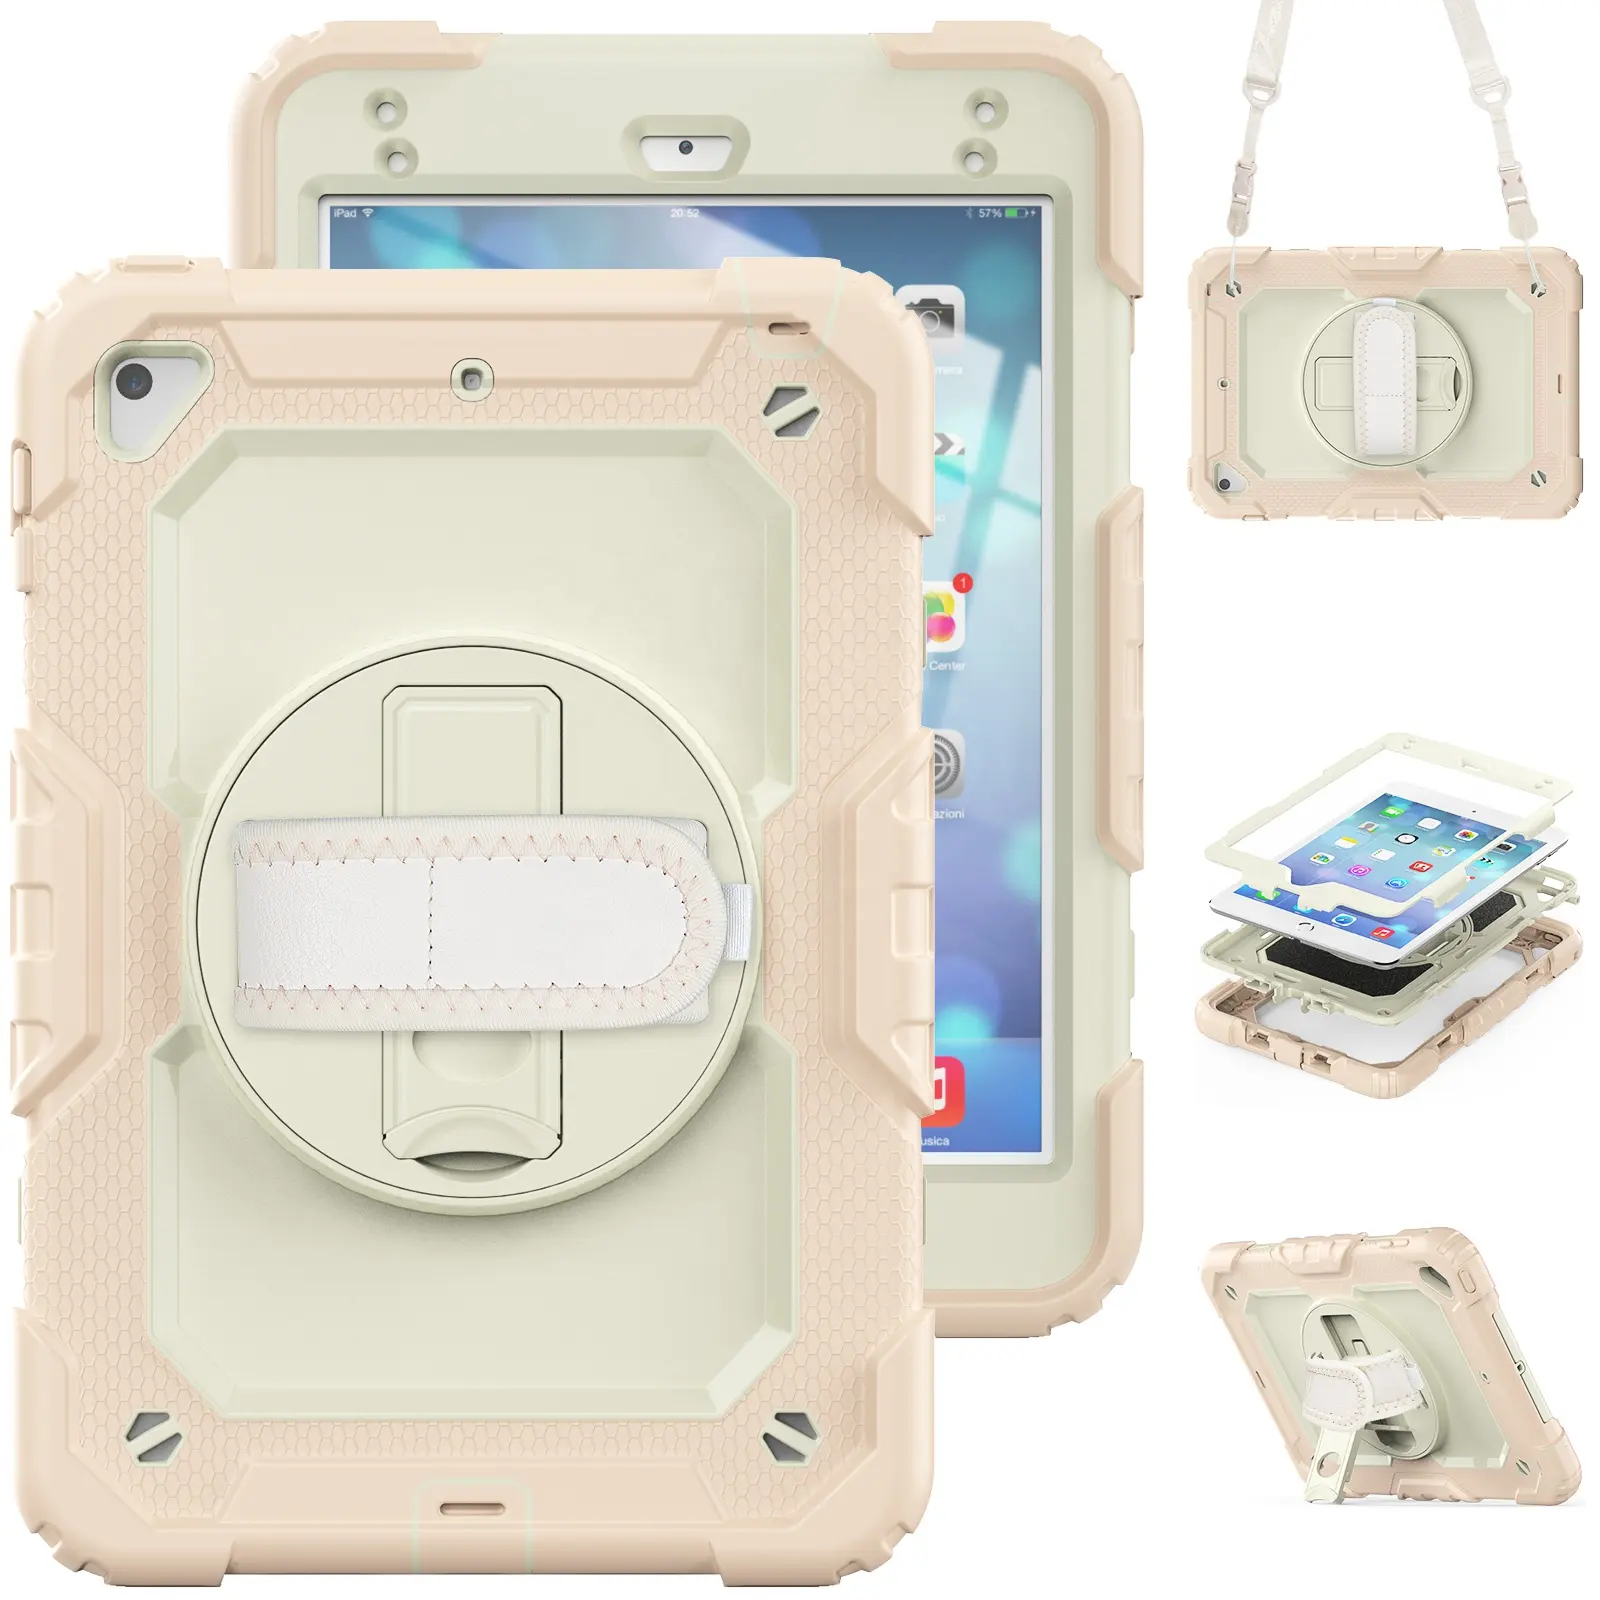 Casing tali tangan Armor untuk iPad Mini 4 5 2015 2019 7.9 360 Tablet kerja berat berputar cangkang pelindung